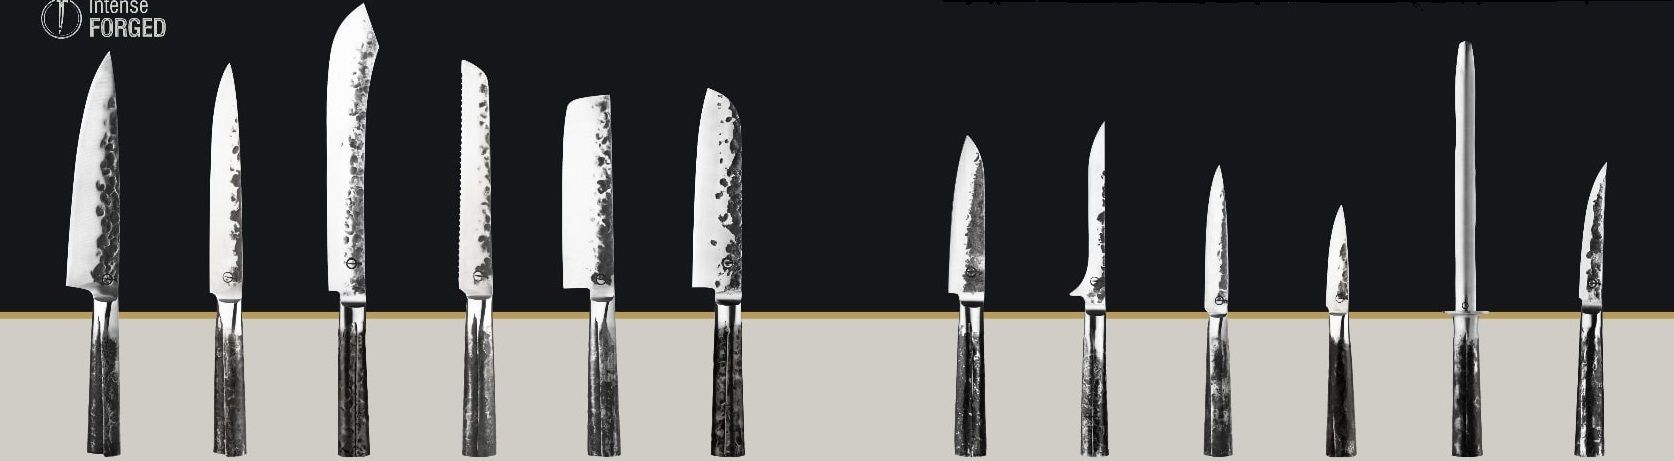 Forged Intense kuchyňské nože